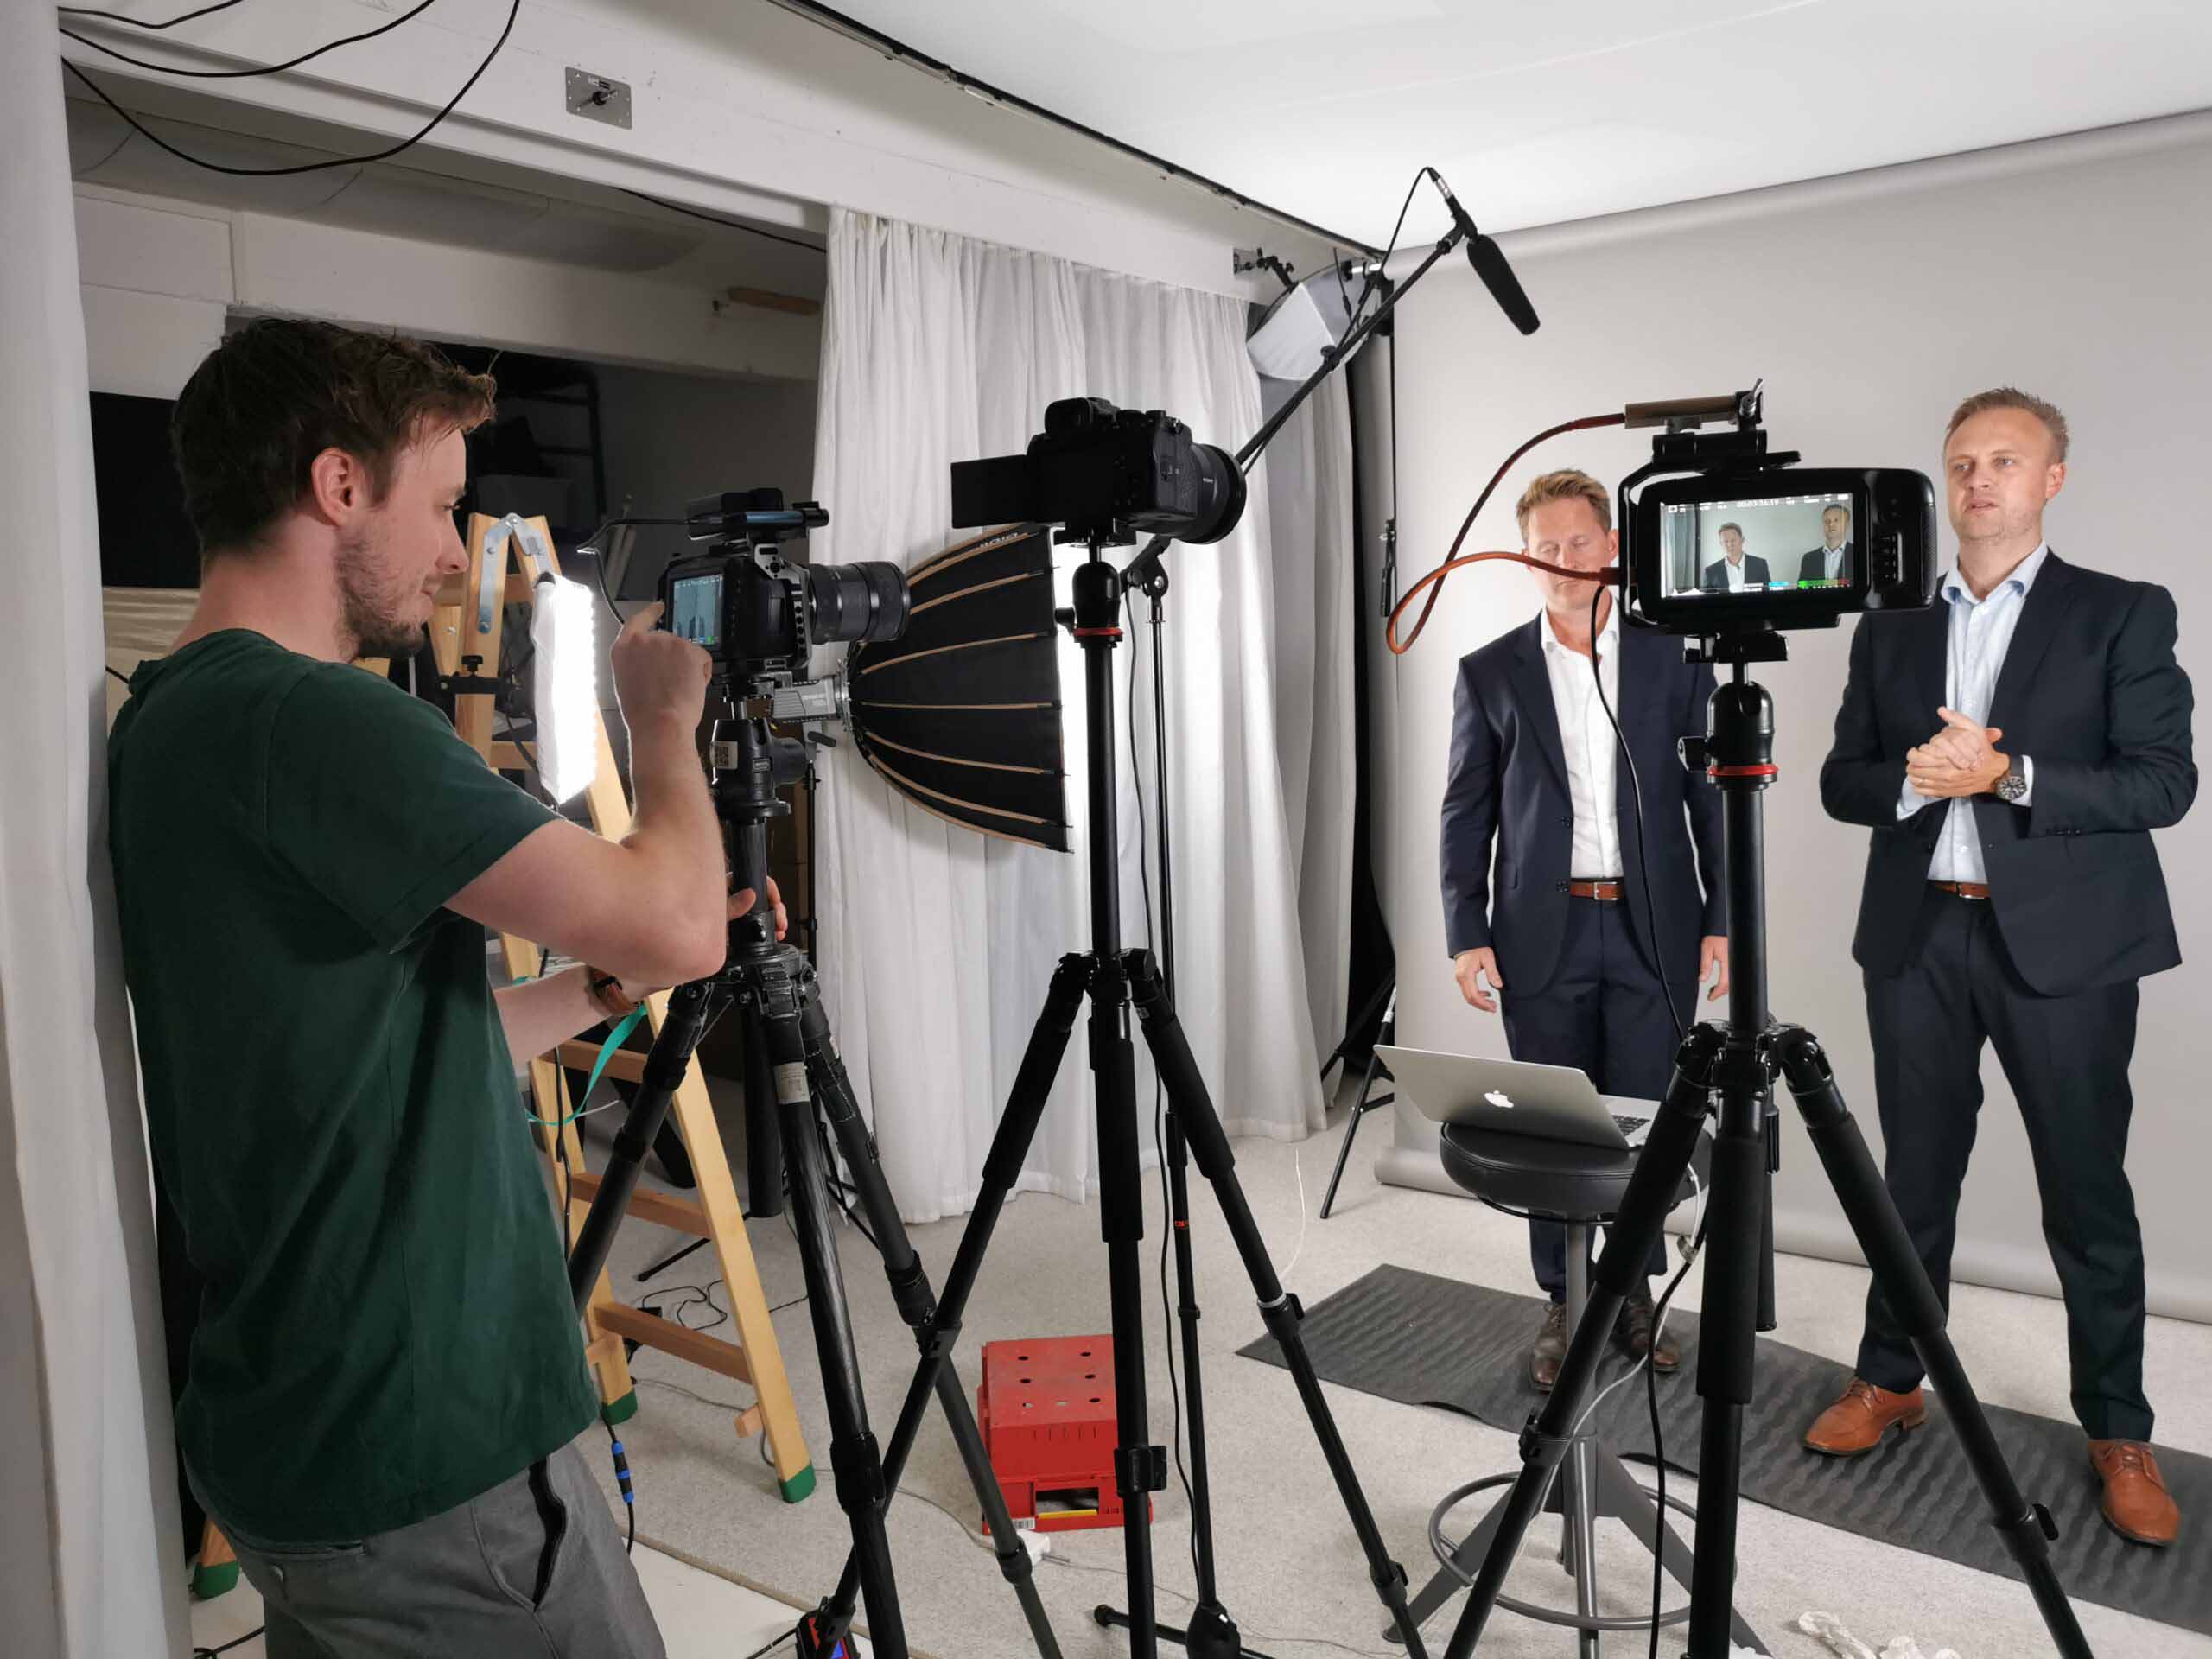 Filmopptak i studio, fotograf, lys, mikrofon, to menn i dress. Roza Pixel, brukt til innlegg om priskalkulator